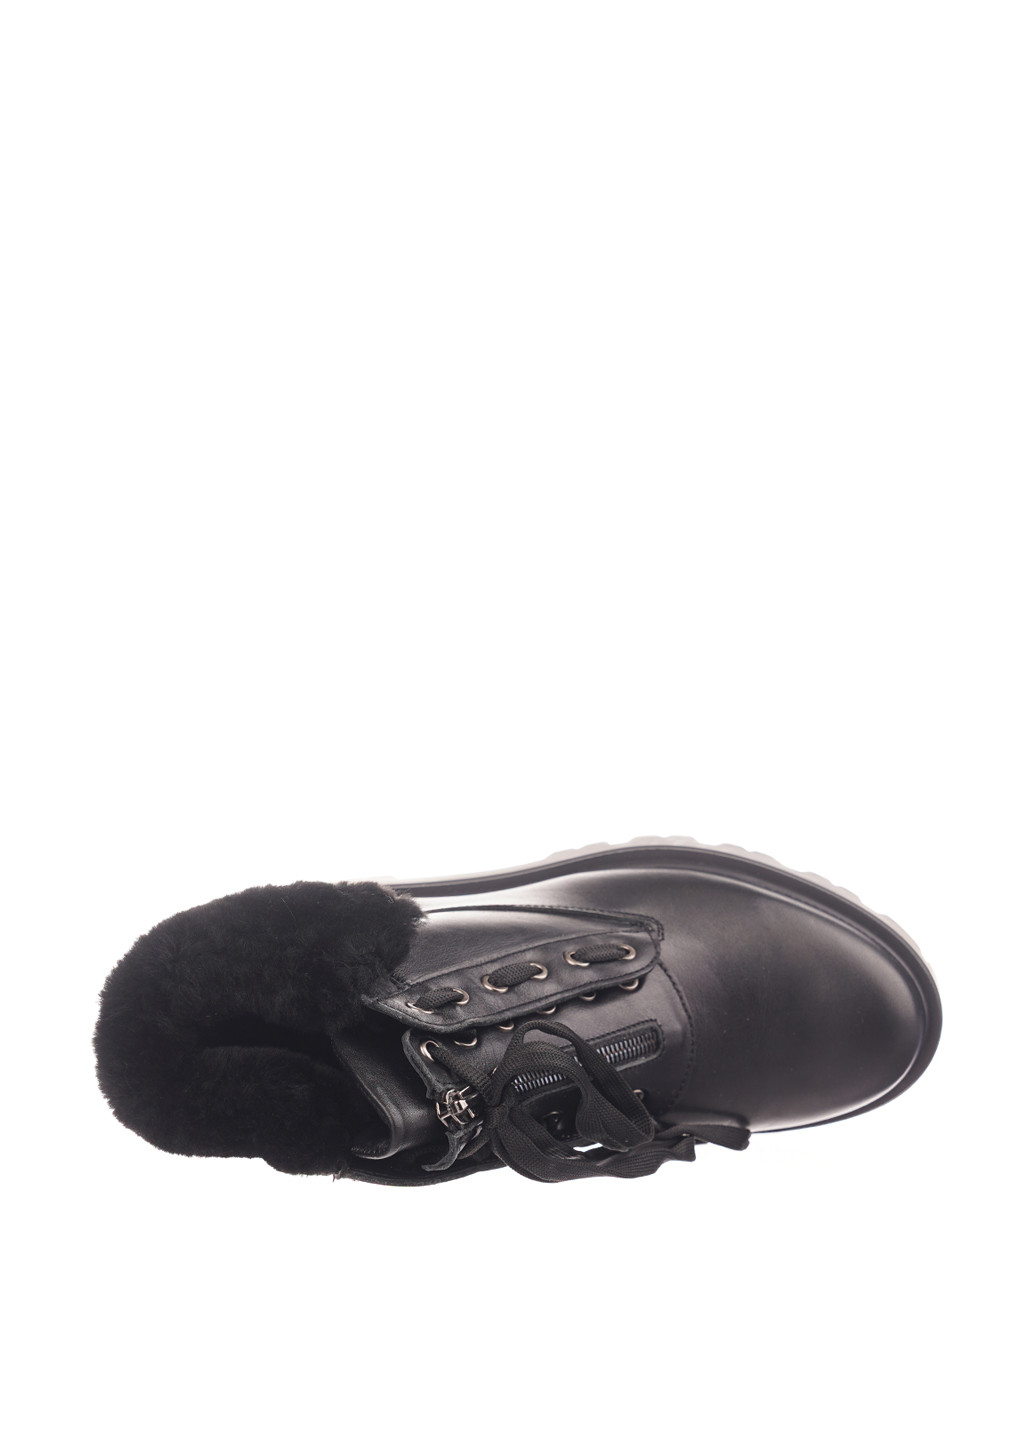 Зимние ботинки Camalini со шнуровкой, с мехом